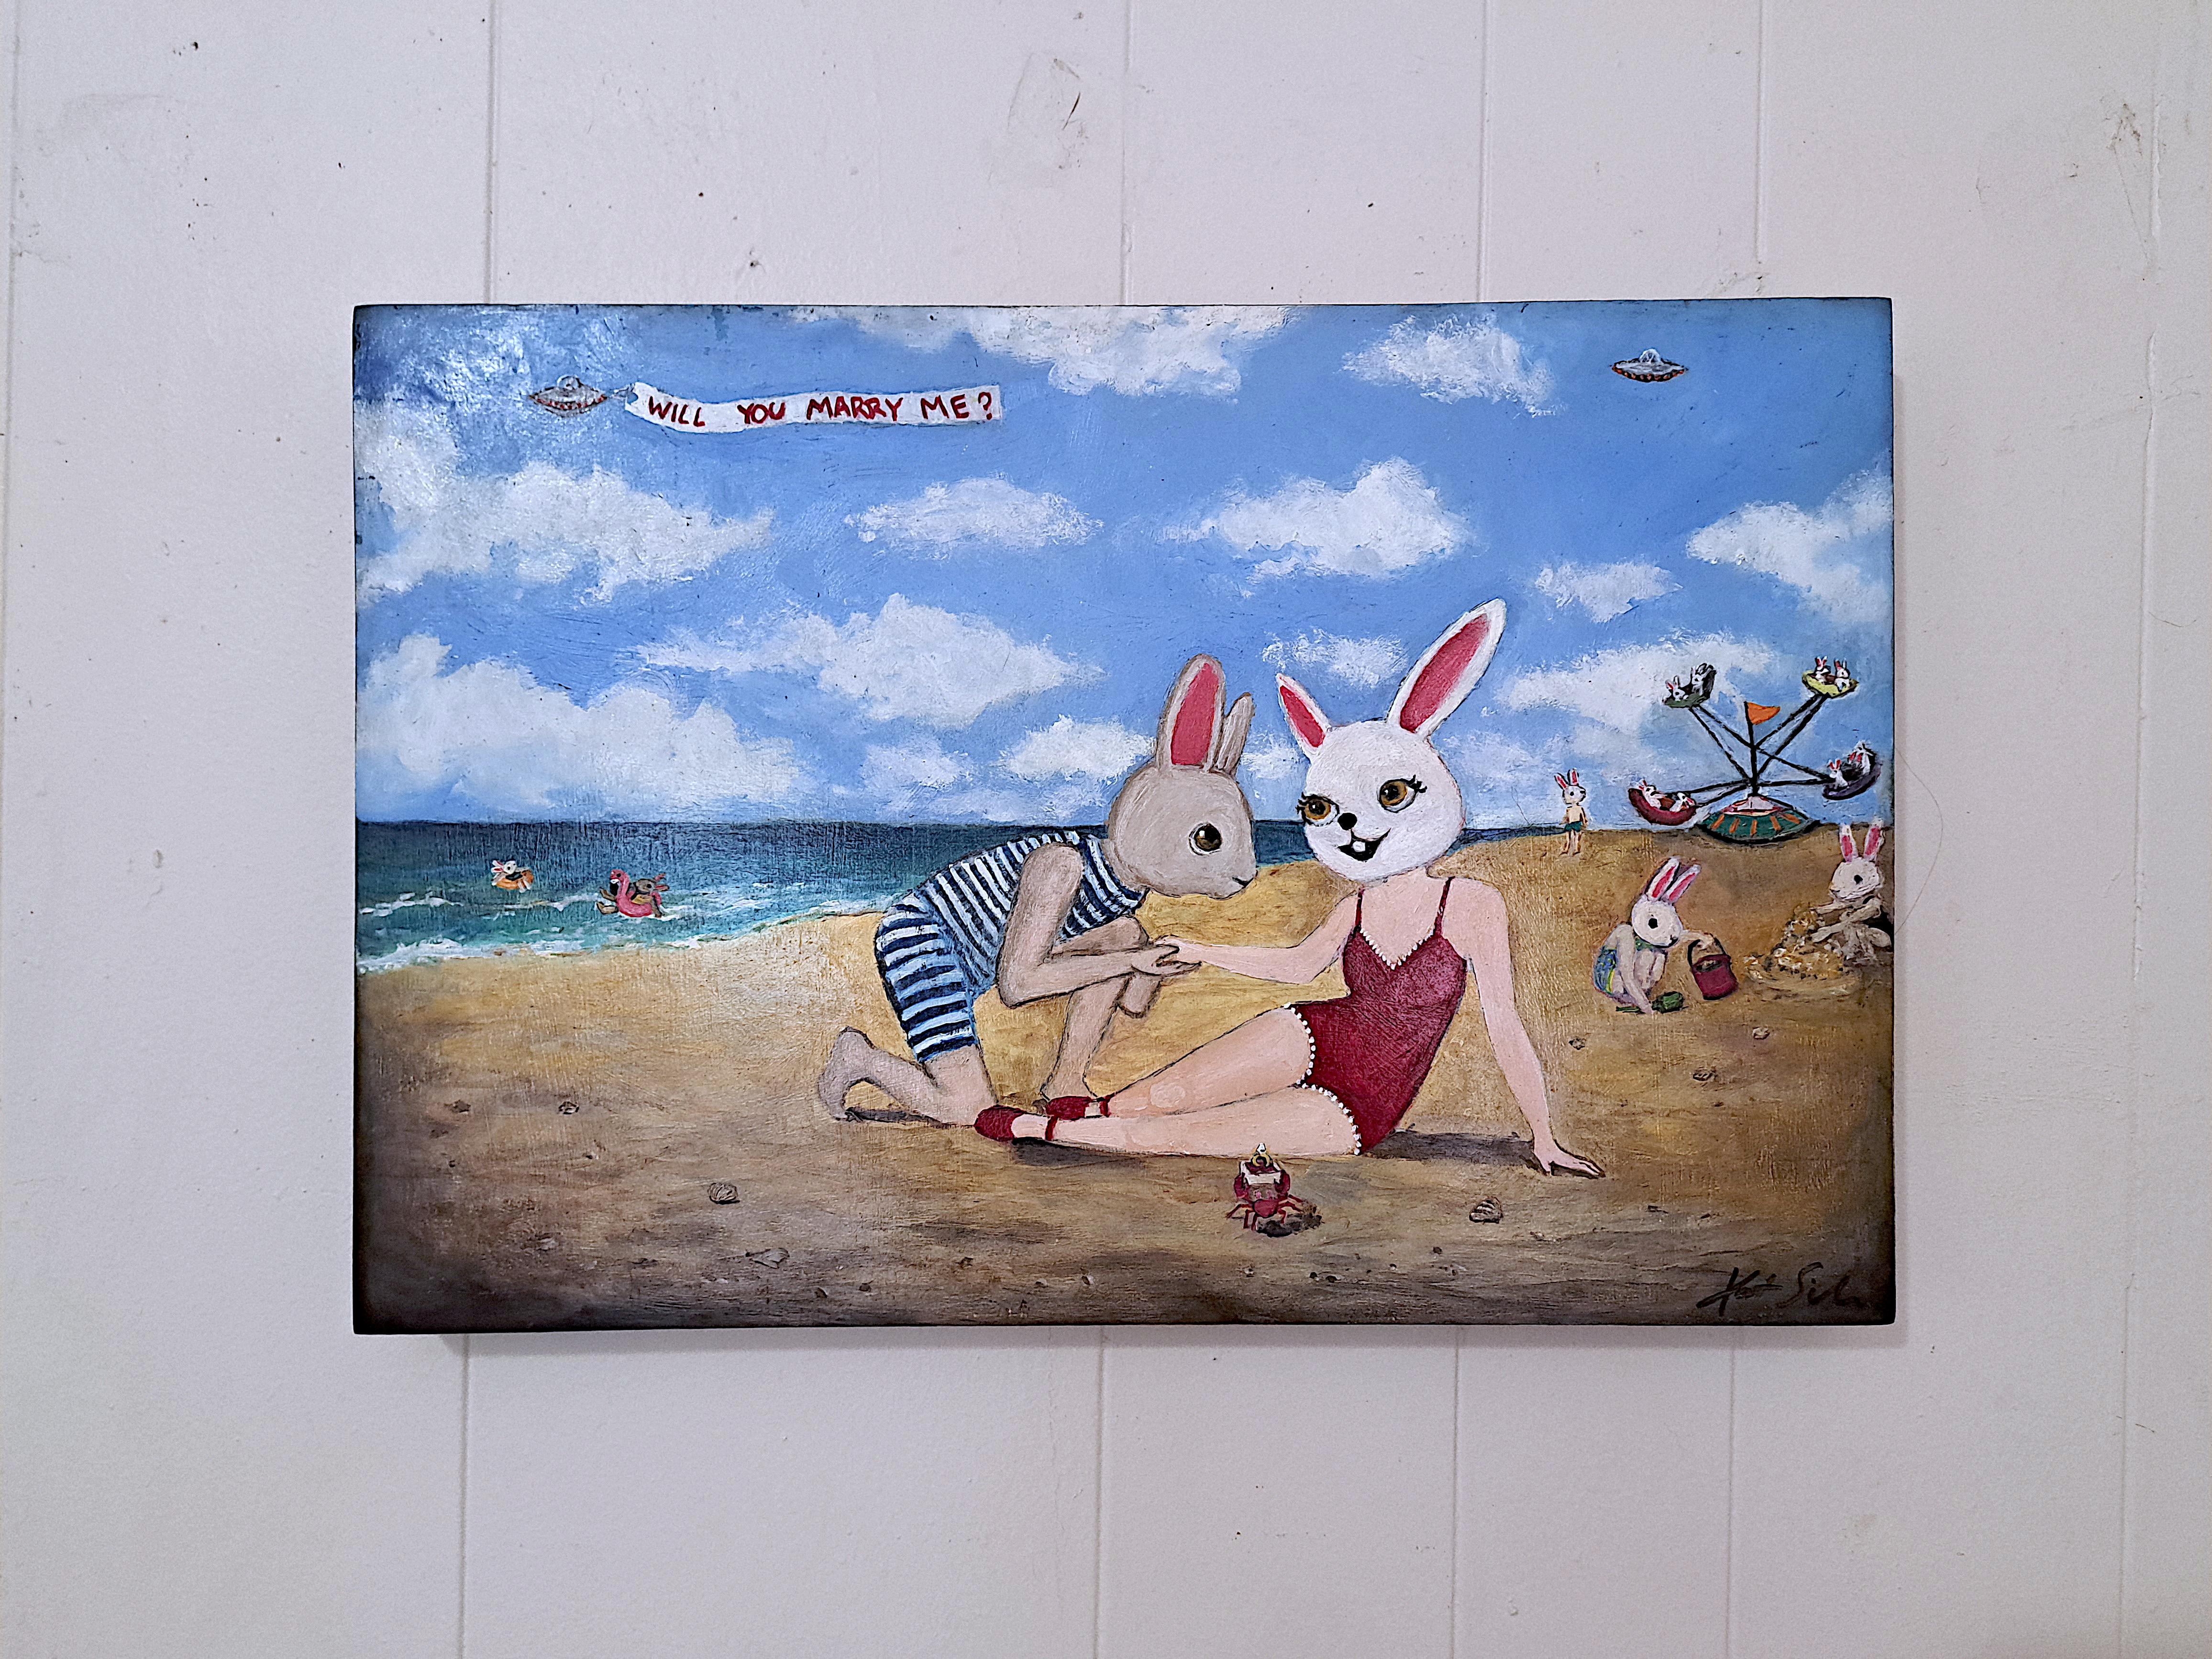 <p>Kommentare des Künstlers<br>Die Szene stellt einen Strand dar, an dem anthropomorphe Kaninchen einen sonnigen Tag genießen. Im Vordergrund sitzt ein Hase anmutig am Sandstrand, während ein anderer neben ihm kniet. In der Ferne schwebt ein UFO mit